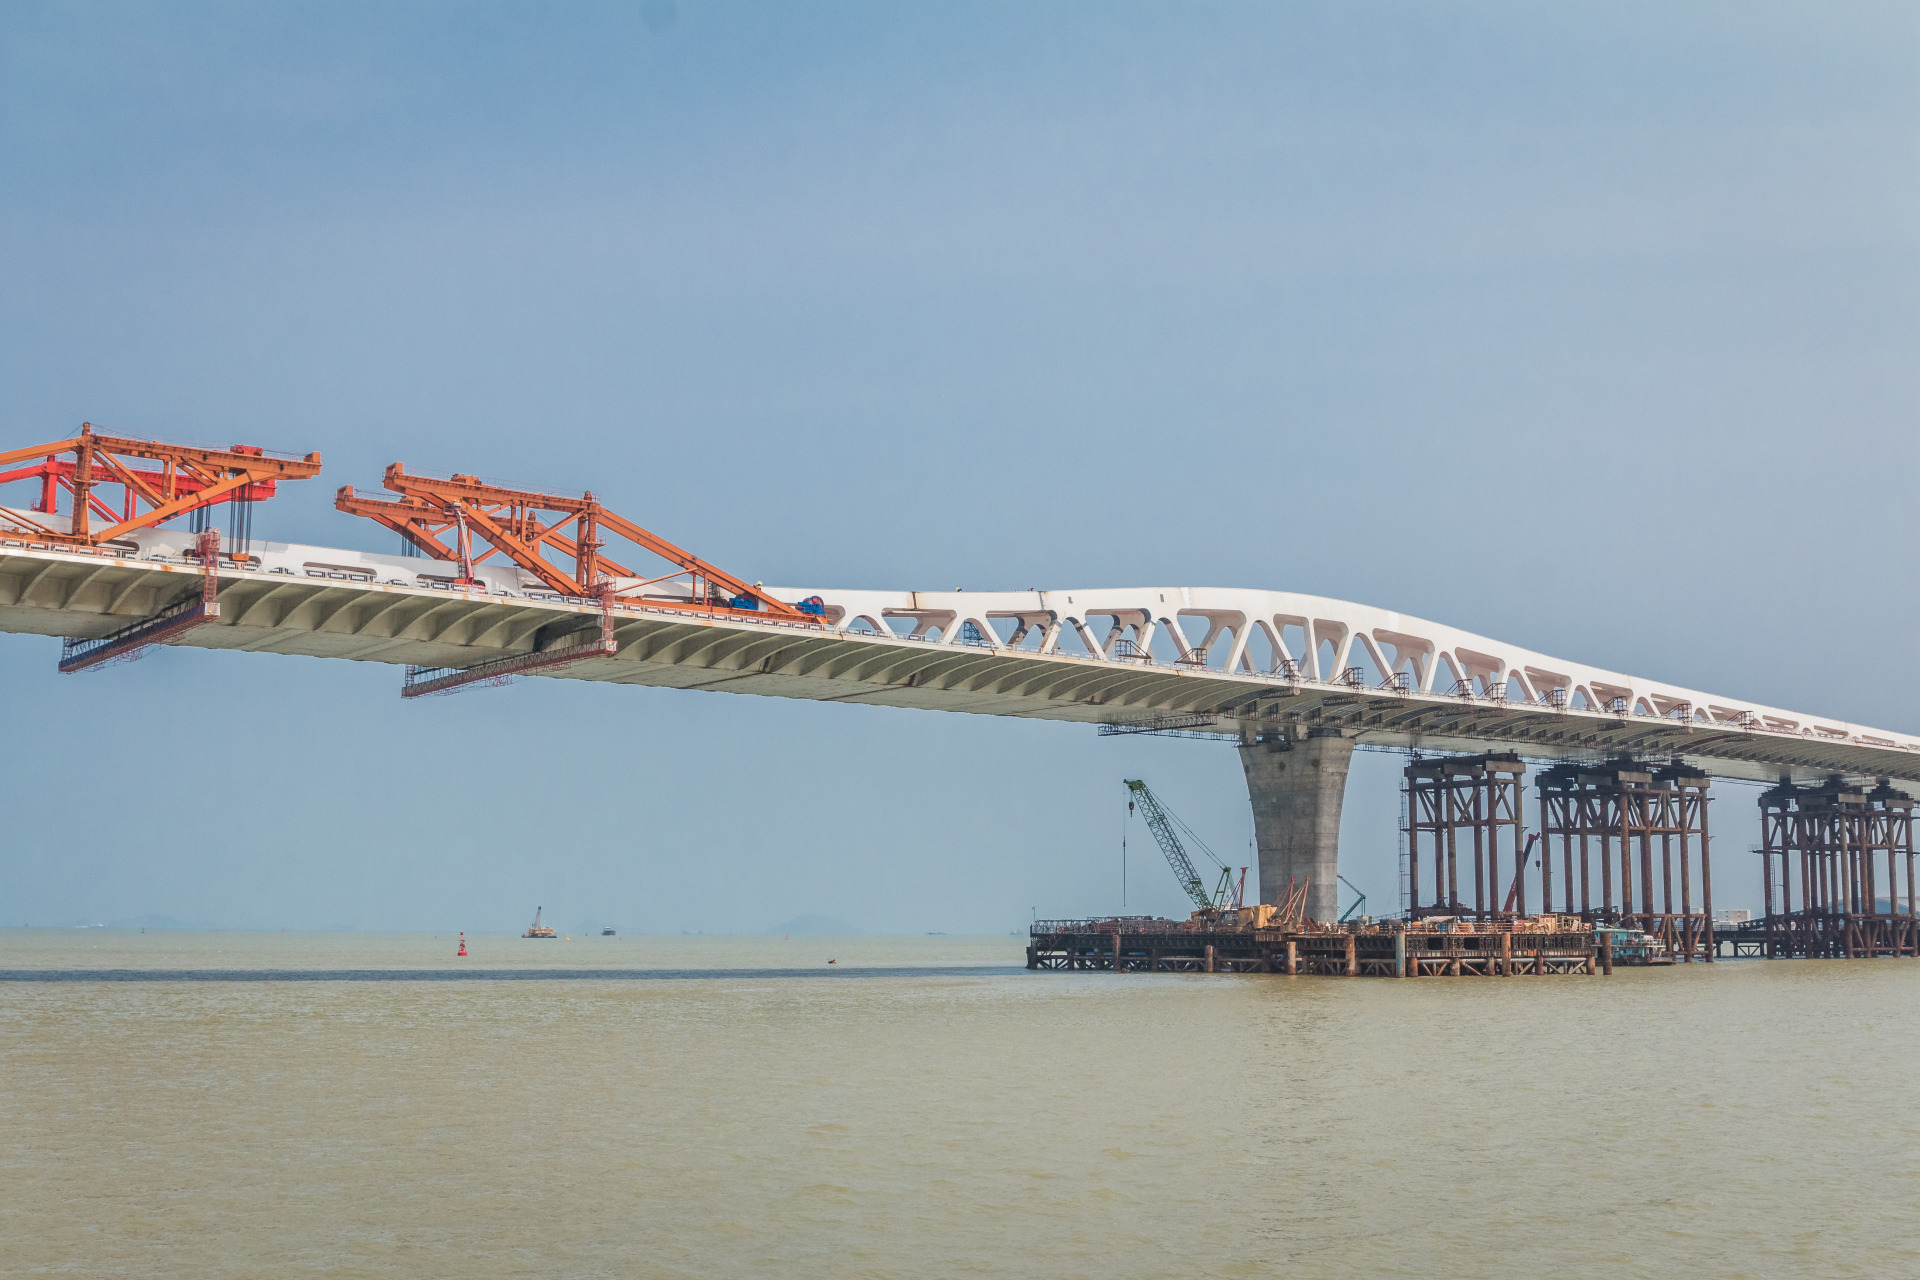 澳门又在修建跨海大桥了,有幸能够看到建设之中的澳氹第四条跨海大桥